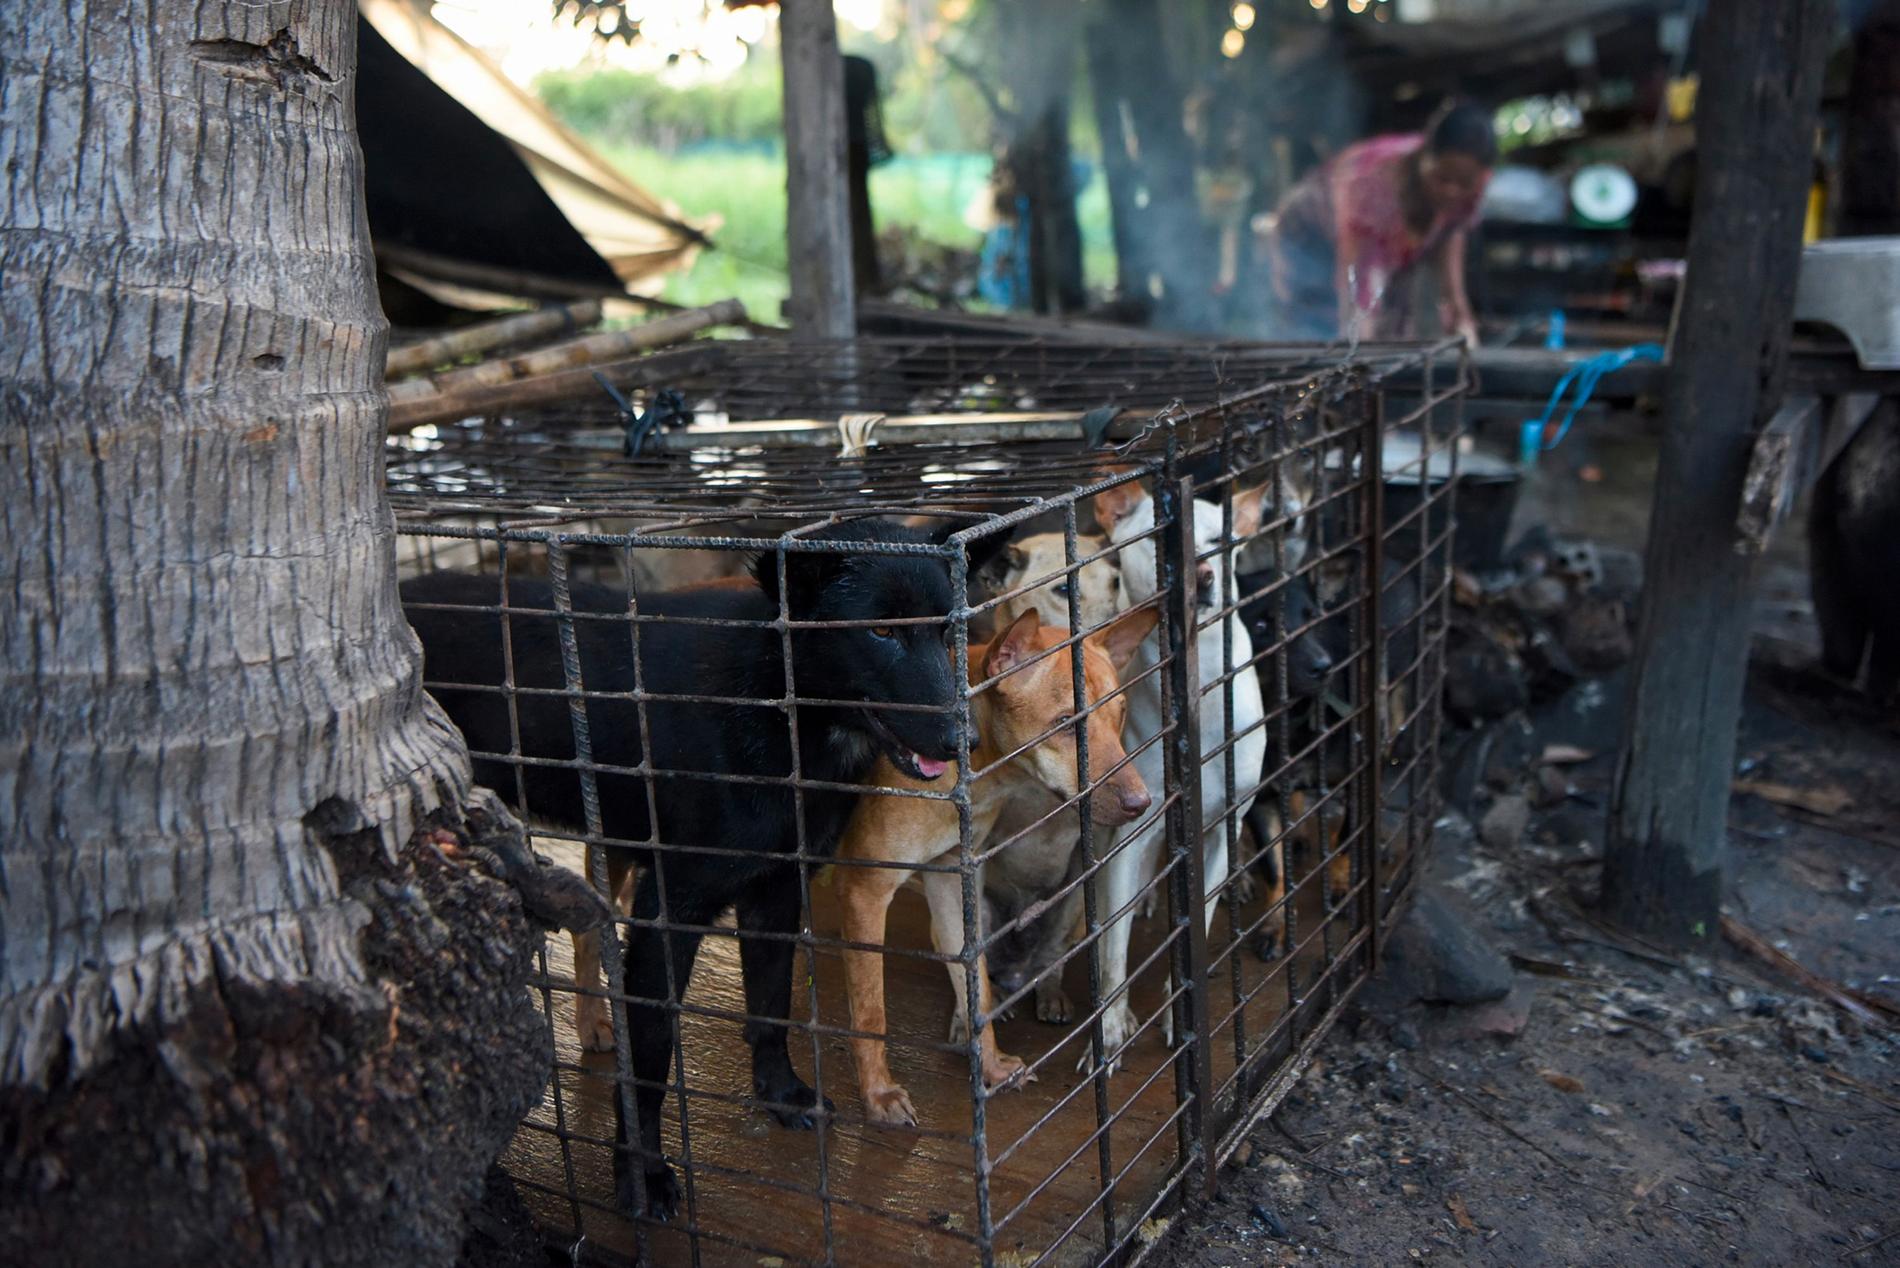 Hundkött ska inte längre få användas till människoföda i Siem Reap i Kambodja. Här är hundar i bur på ett slakteri i höstas.